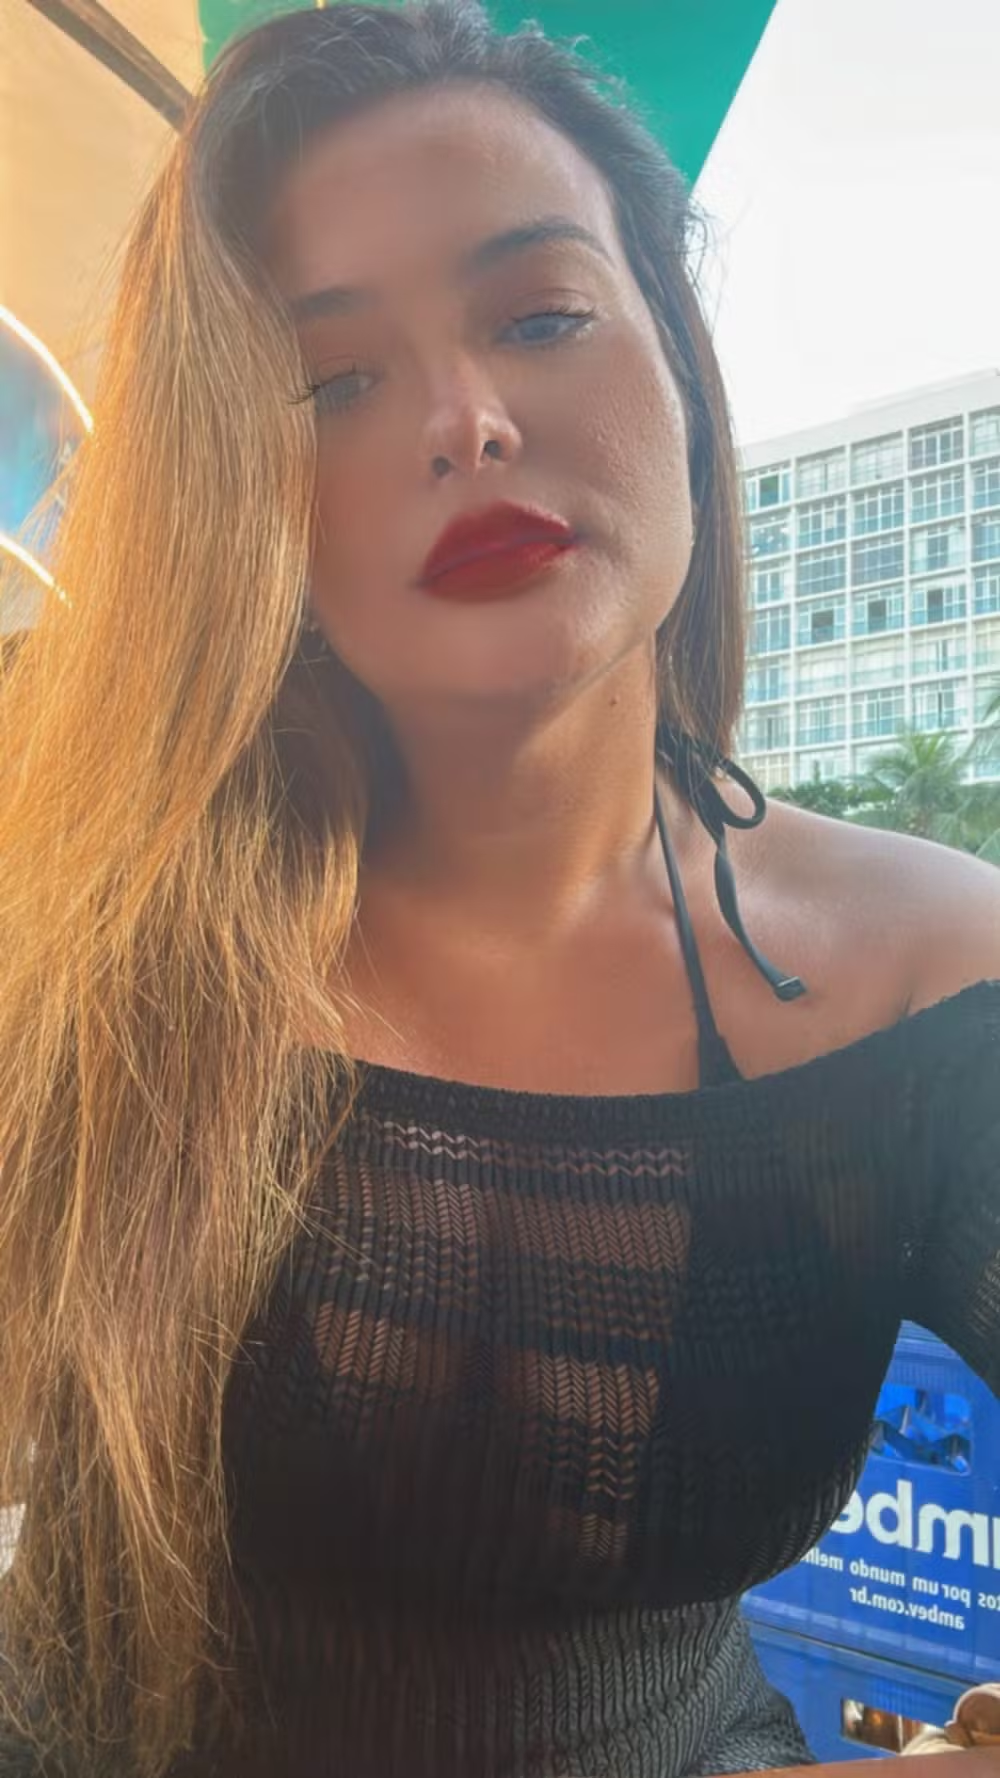 Estilo e descontração: Geisy Arruda aproveita Copacabana de biquíni fio dental e chá mate Instagram